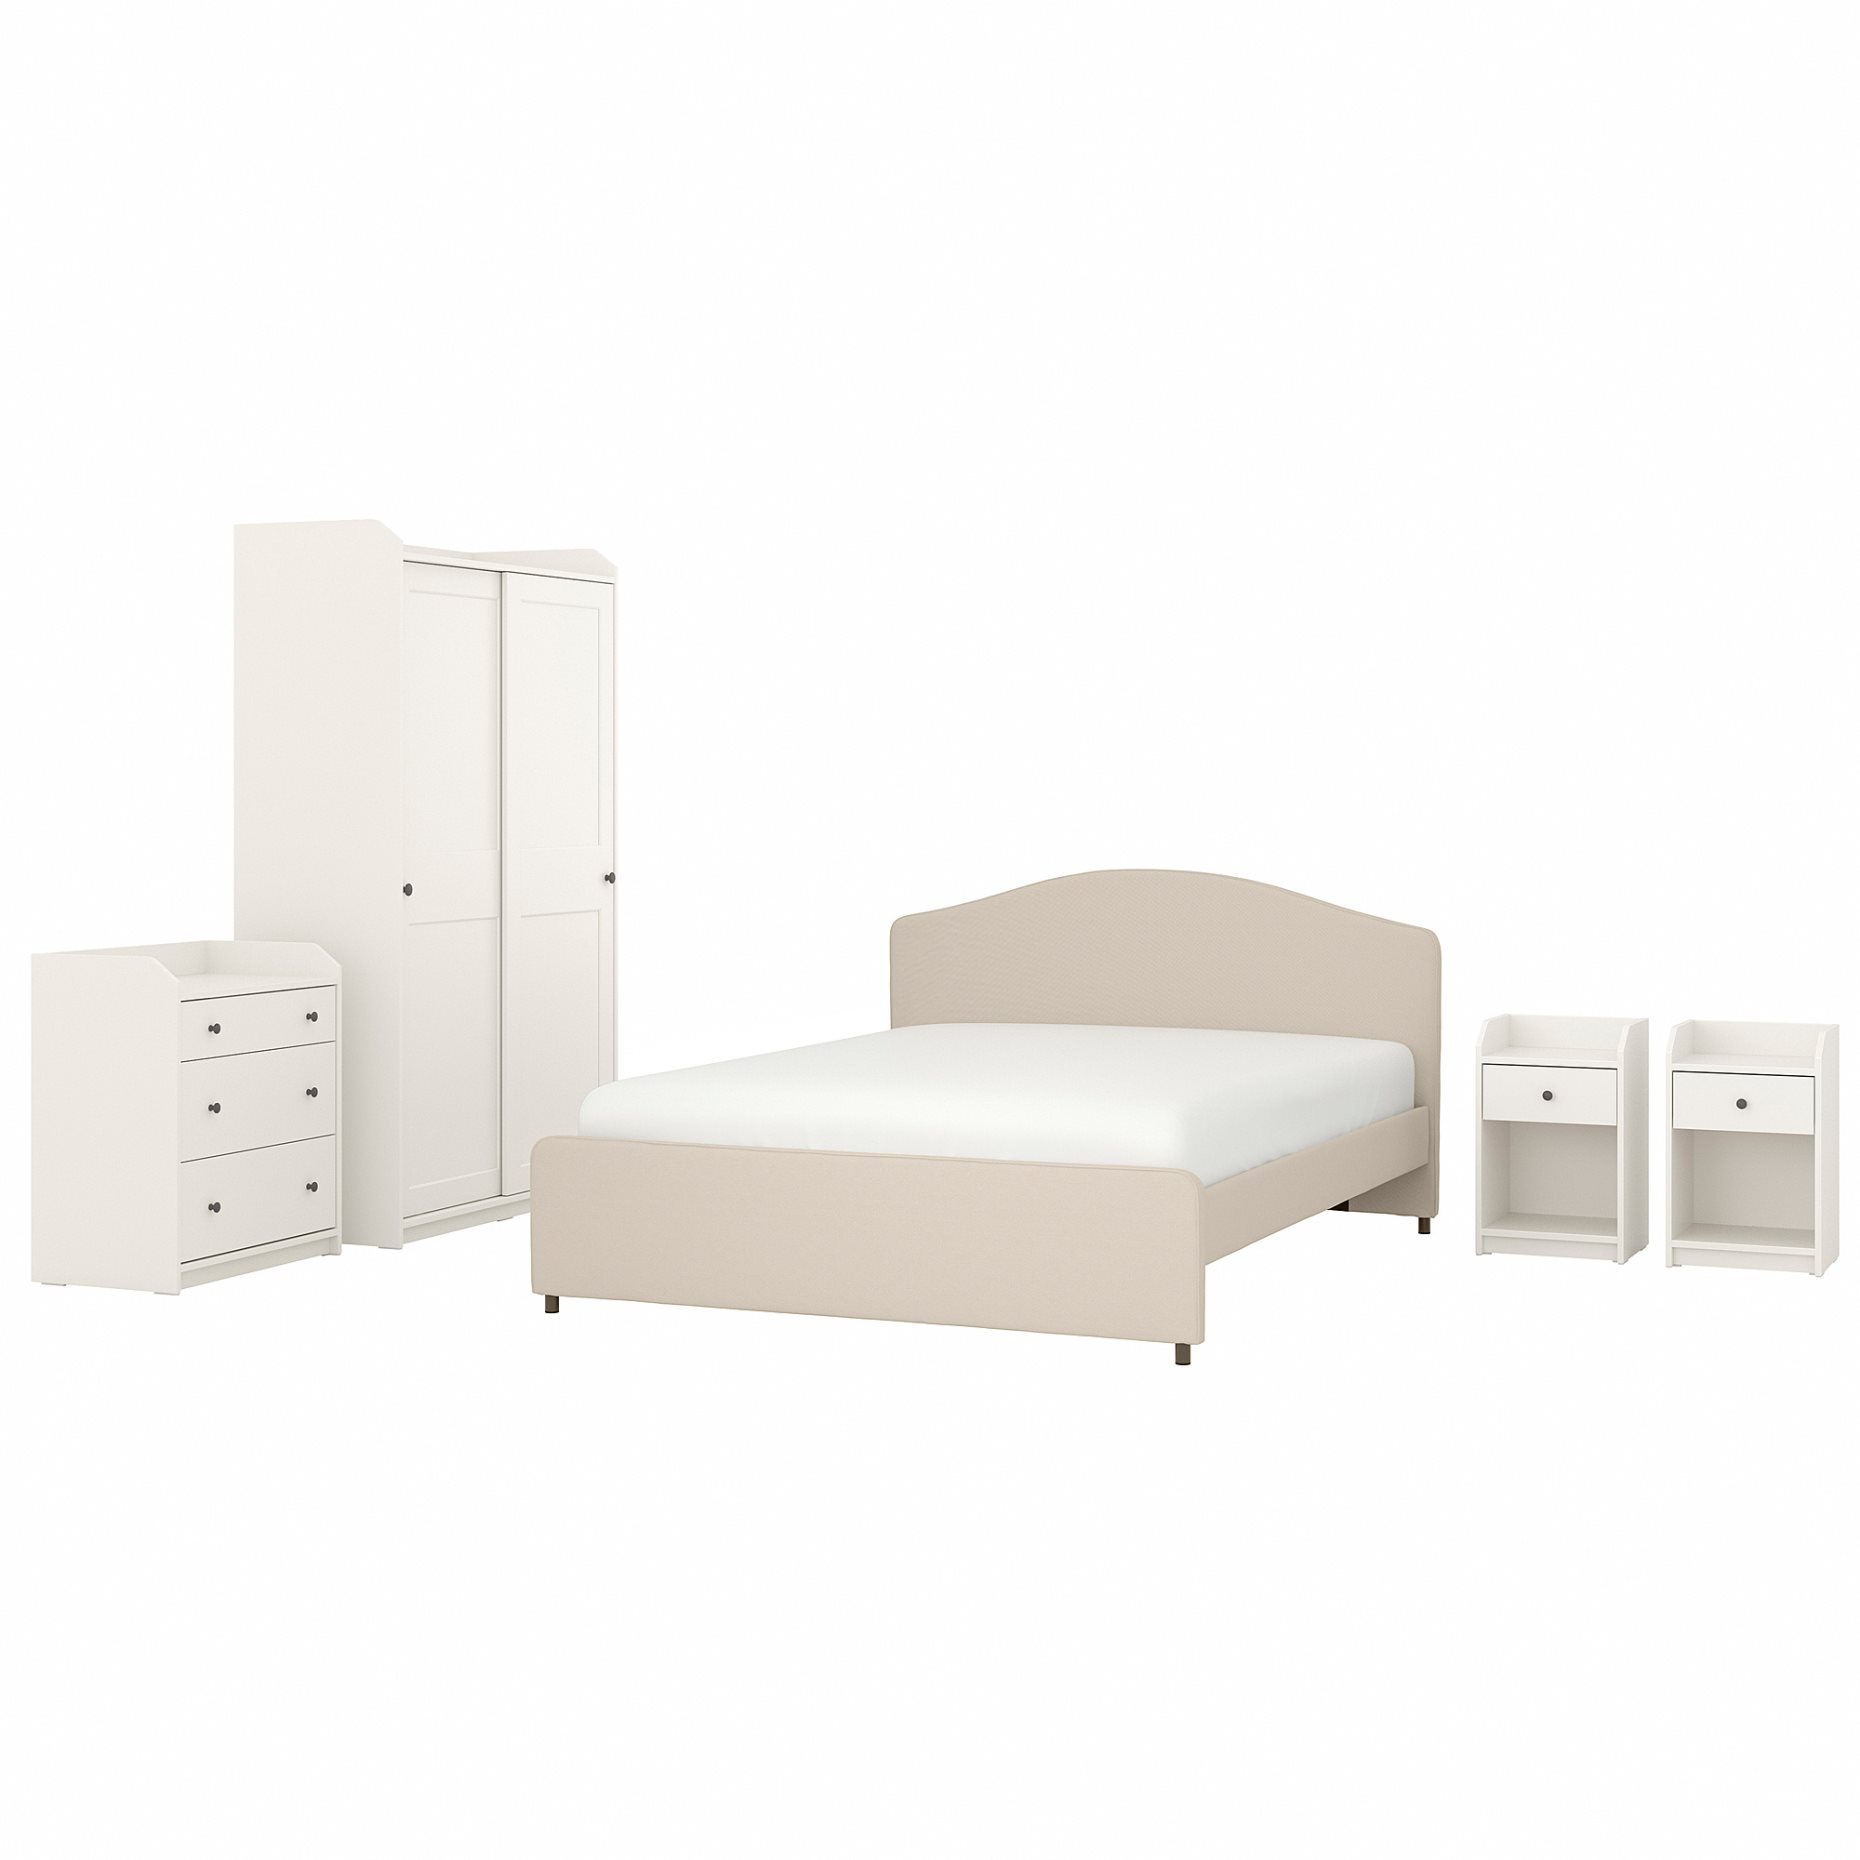 HAUGA, bedroom furniture/set of 5, 160x200 cm, 394.860.72